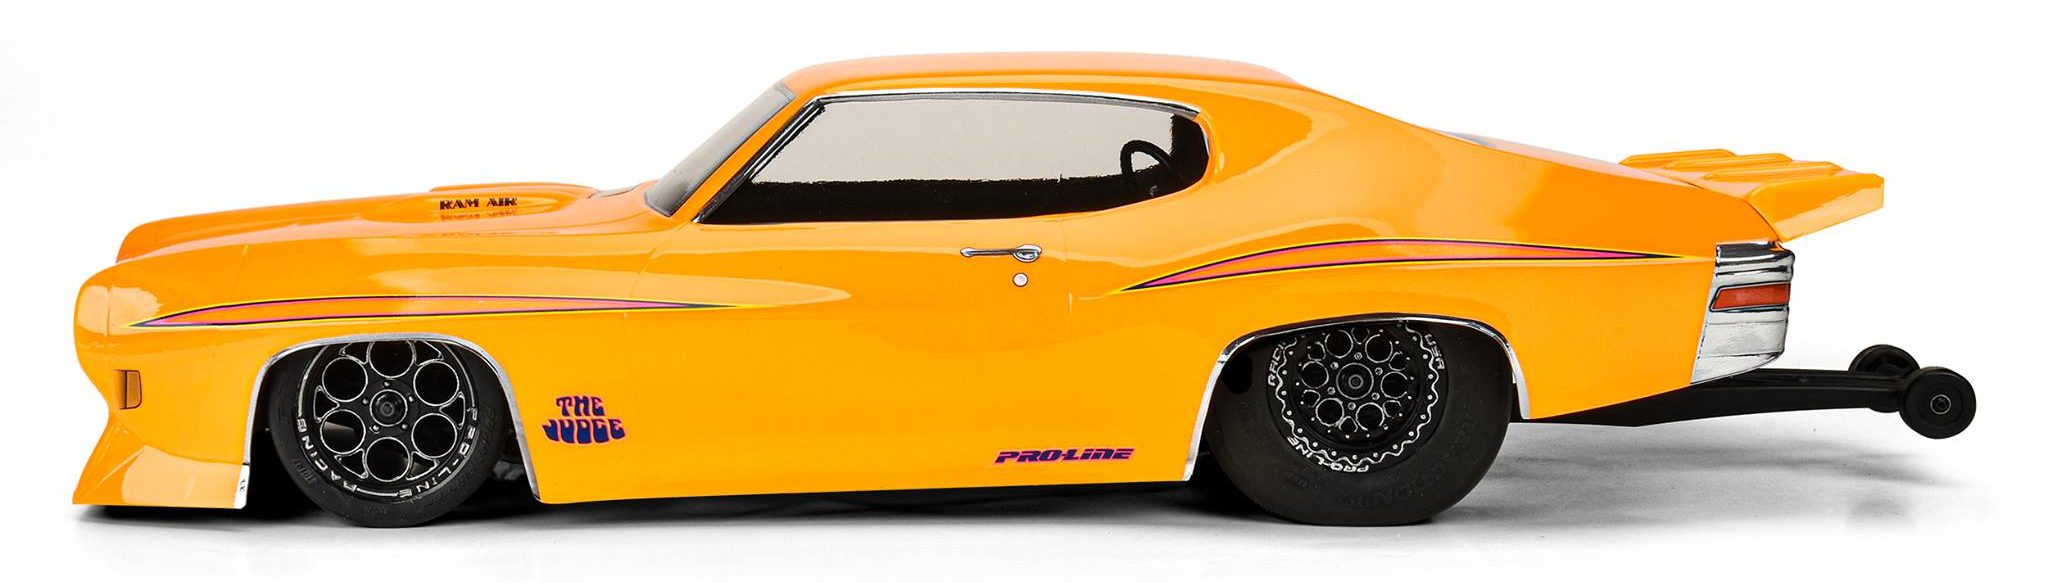 Pro-Line 1970 Pontiac GTO Judge Clear Drag Body